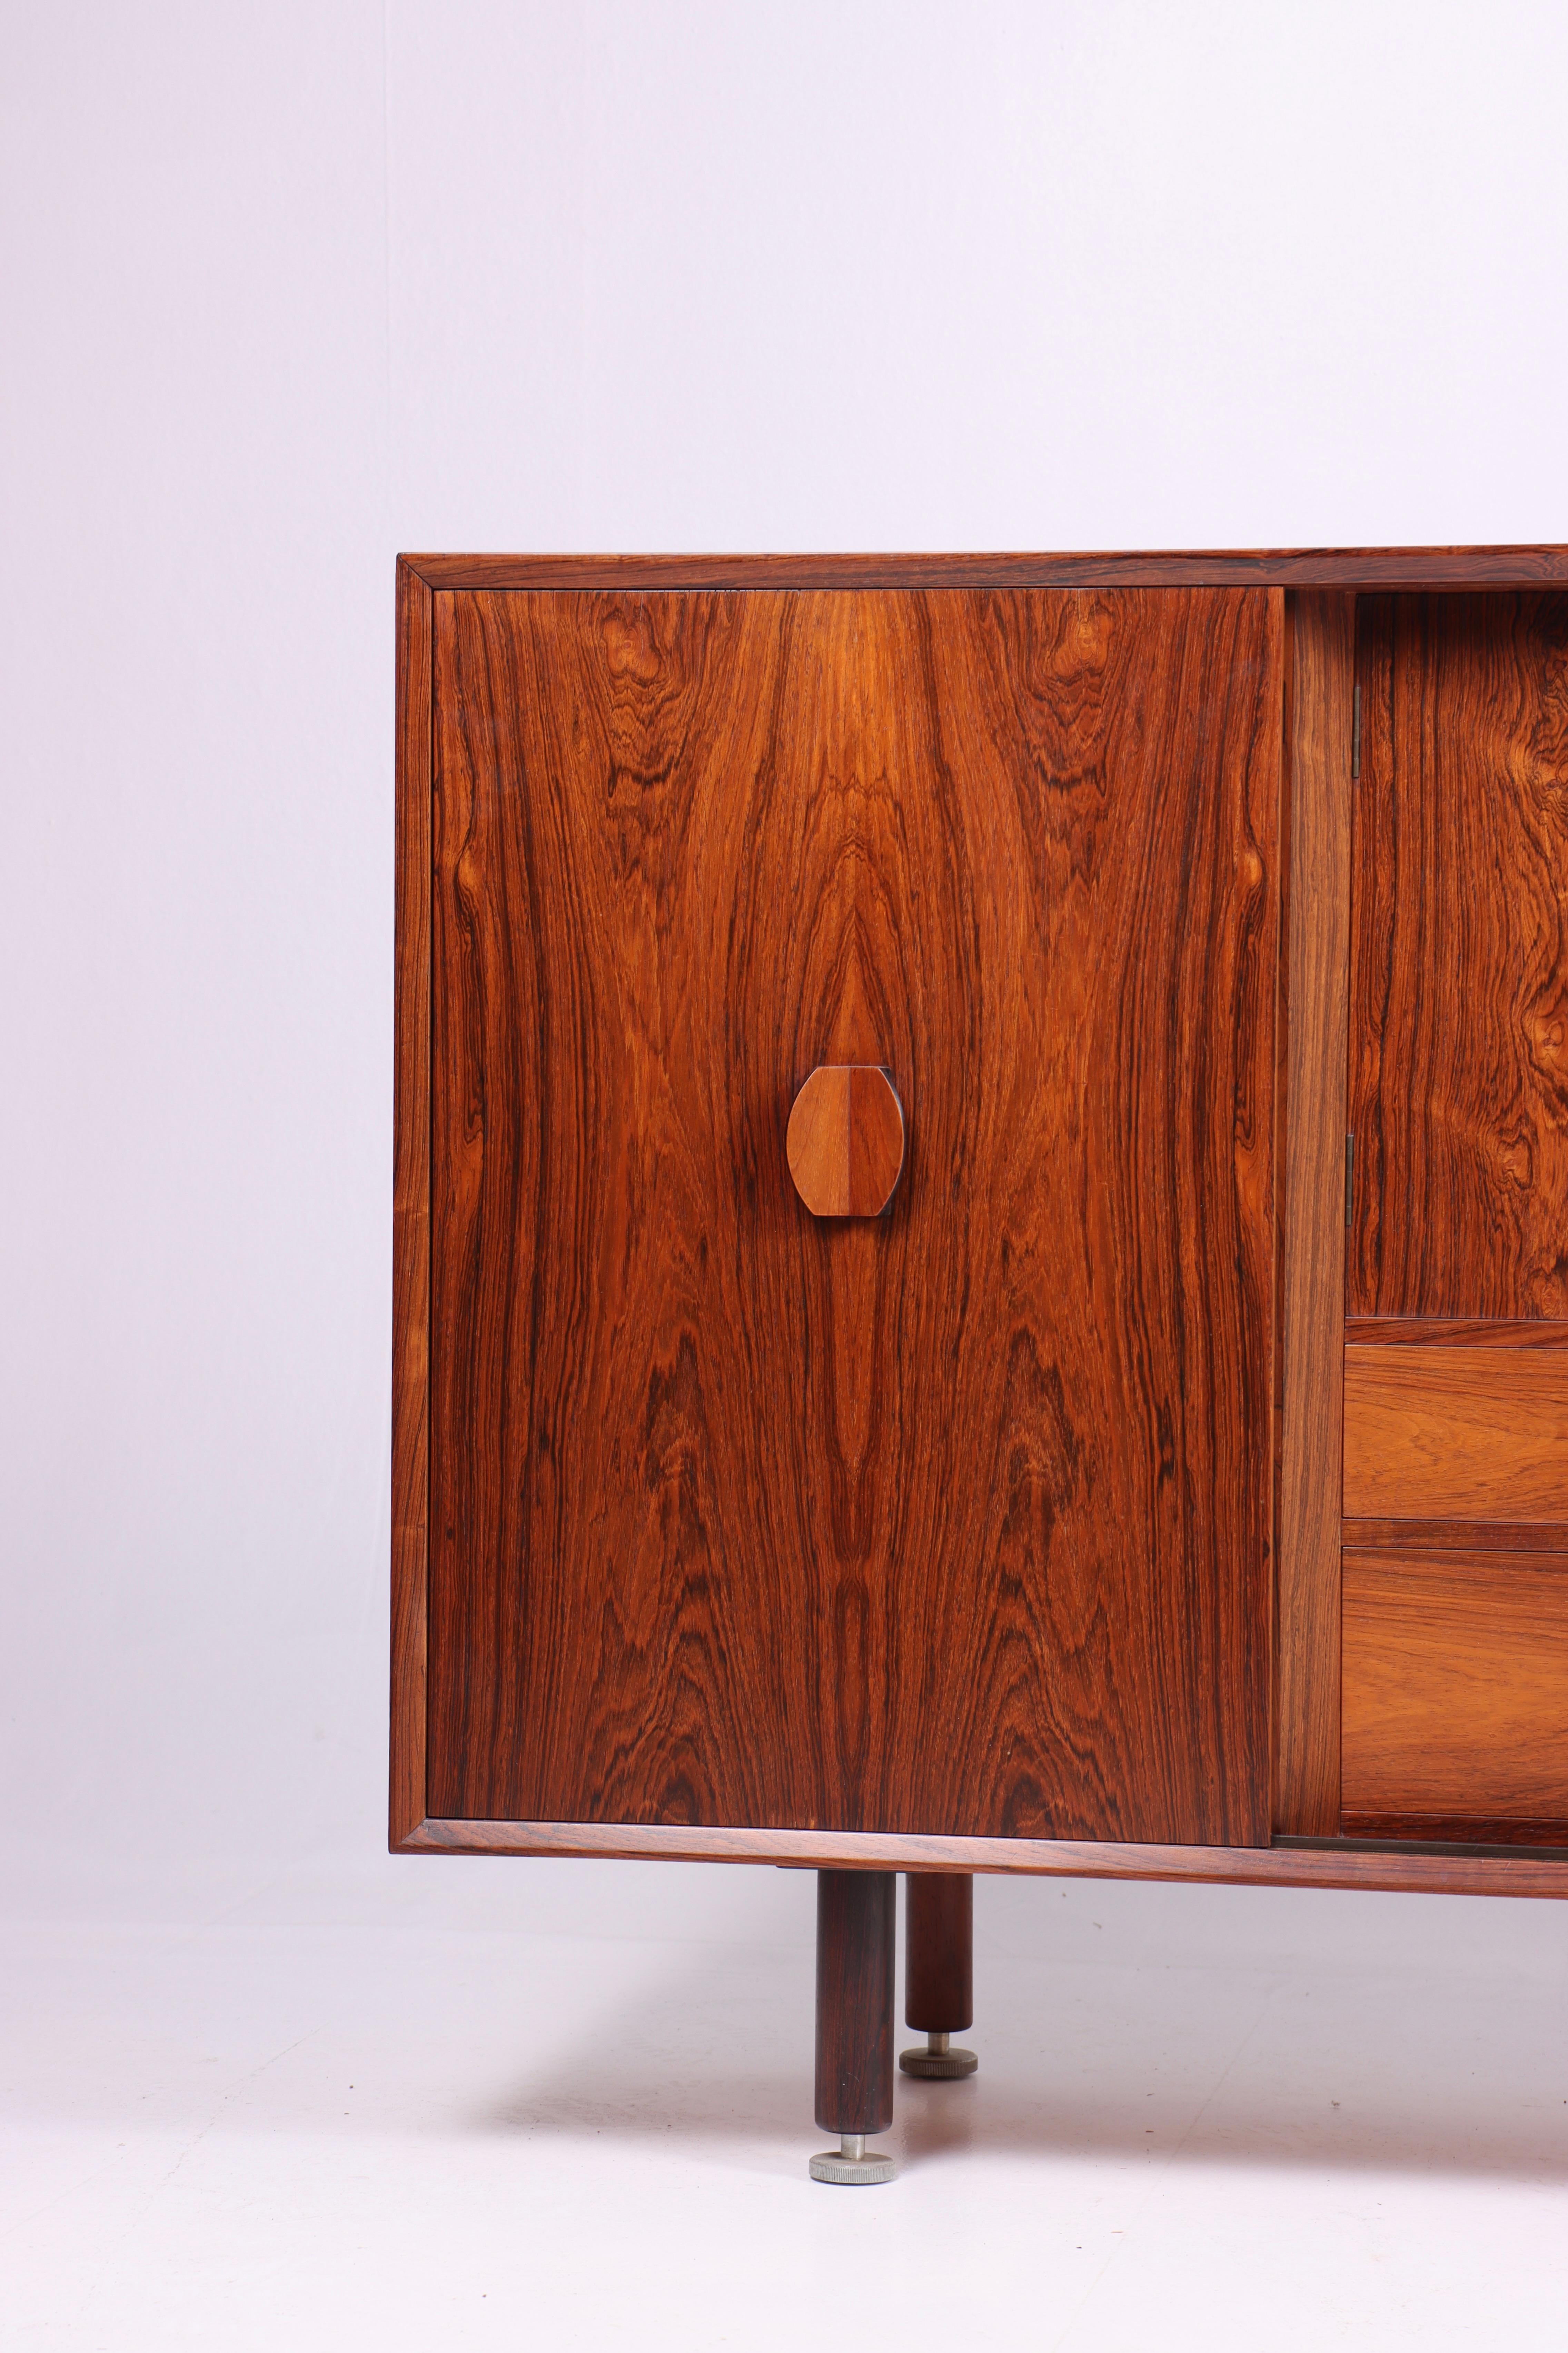 Das dänische Sideboard aus den 1960er Jahren, entworfen von dem bekannten Möbeldesigner Jens Risom.

Das Sideboard zeichnet sich durch sein schönes Palisanderholz aus, das Wärme und Charakter in jeden Raum bringt. Die natürliche Maserung und die